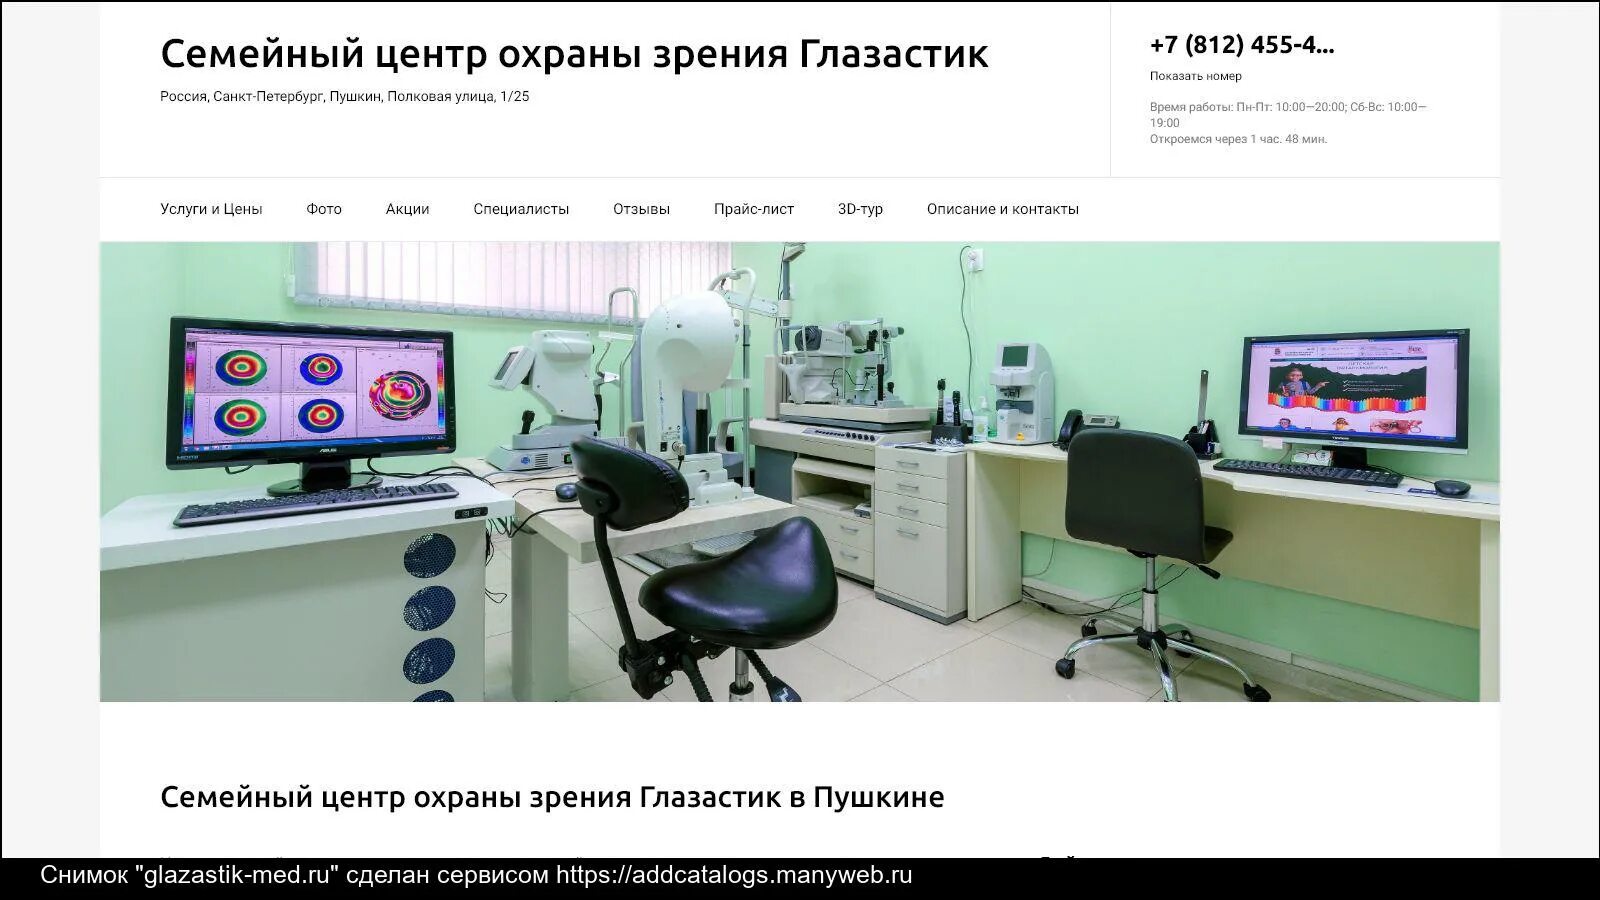 Кабинет охраны зрения. Кабинет охраны зрения Москва. Международный центр охраны зрения. Кабинет охраны зрения детей.